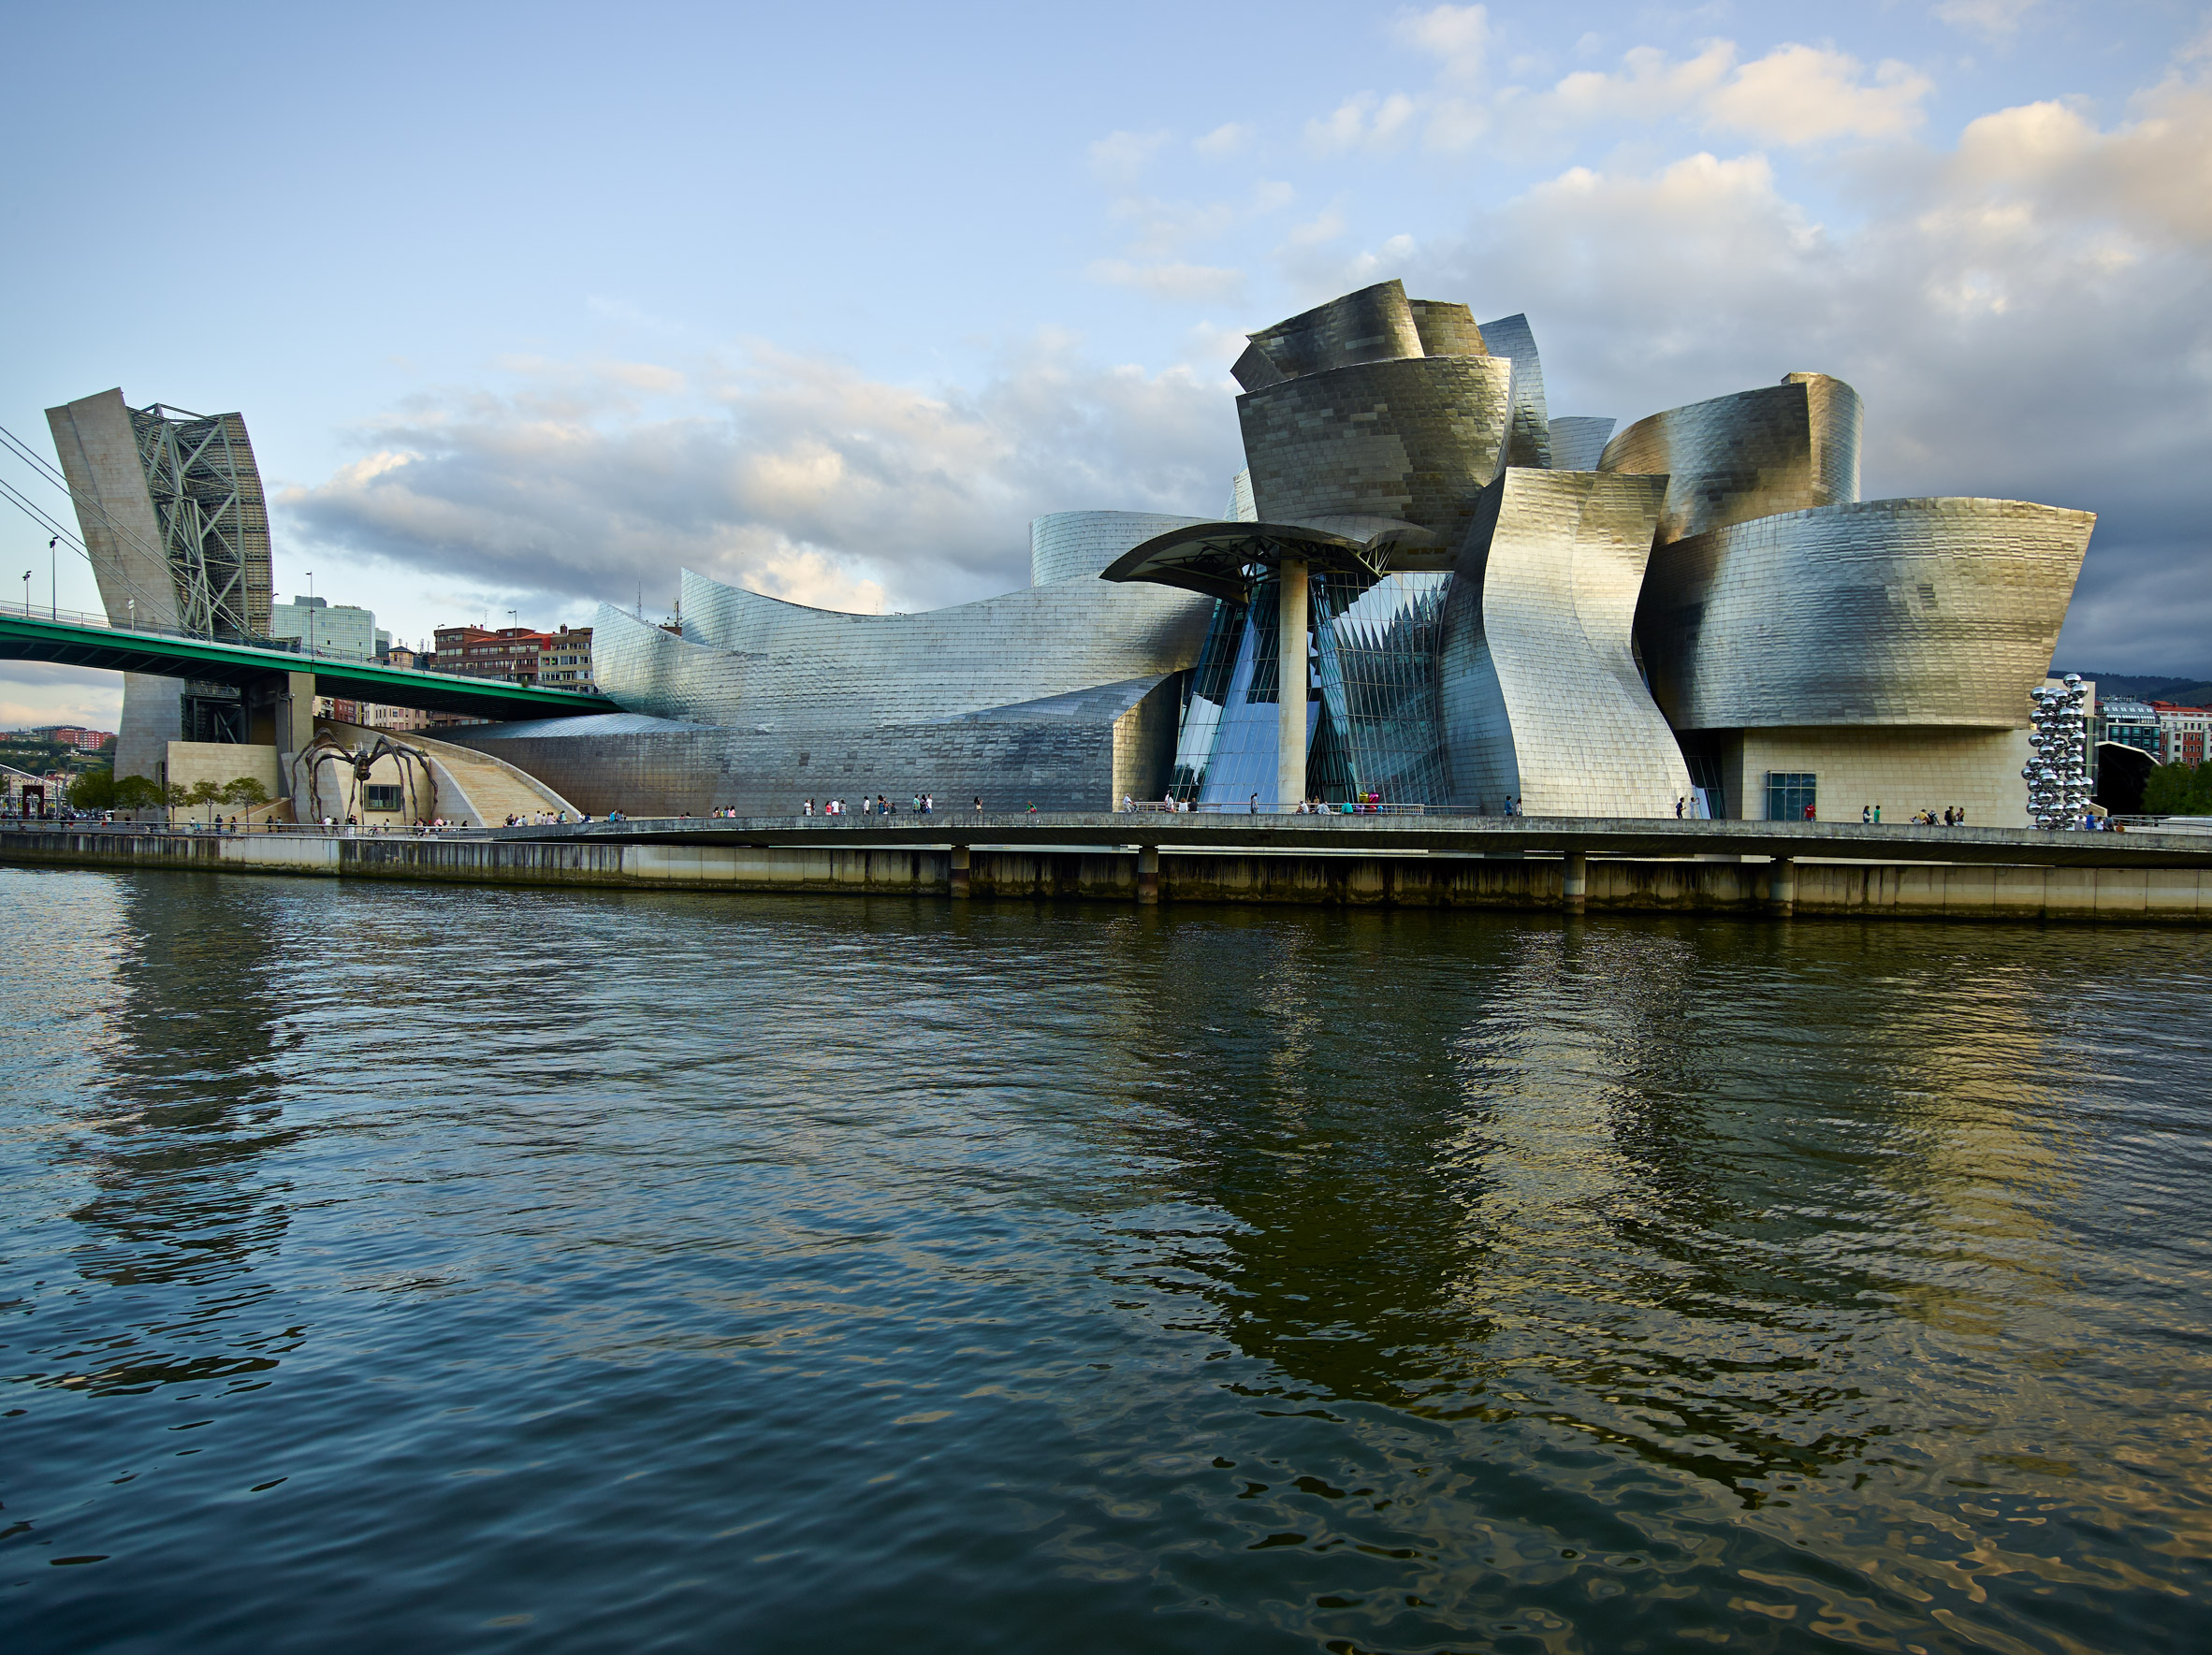 Major museum in Bilbao